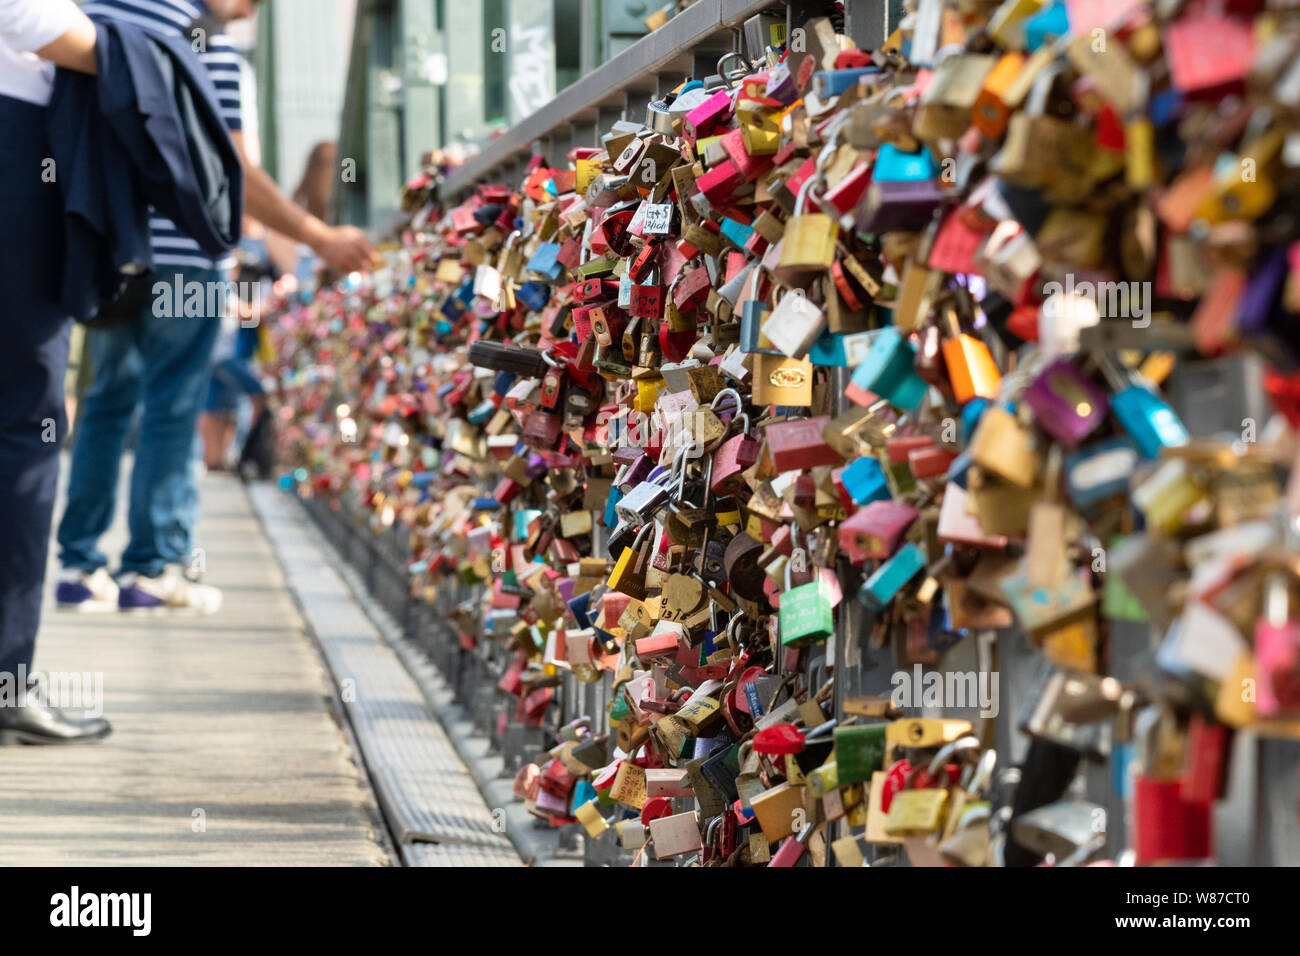 L'amour se verrouille sur le pont de fer de Francfort, Frankfurt am Main, Germany, Europe Banque D'Images